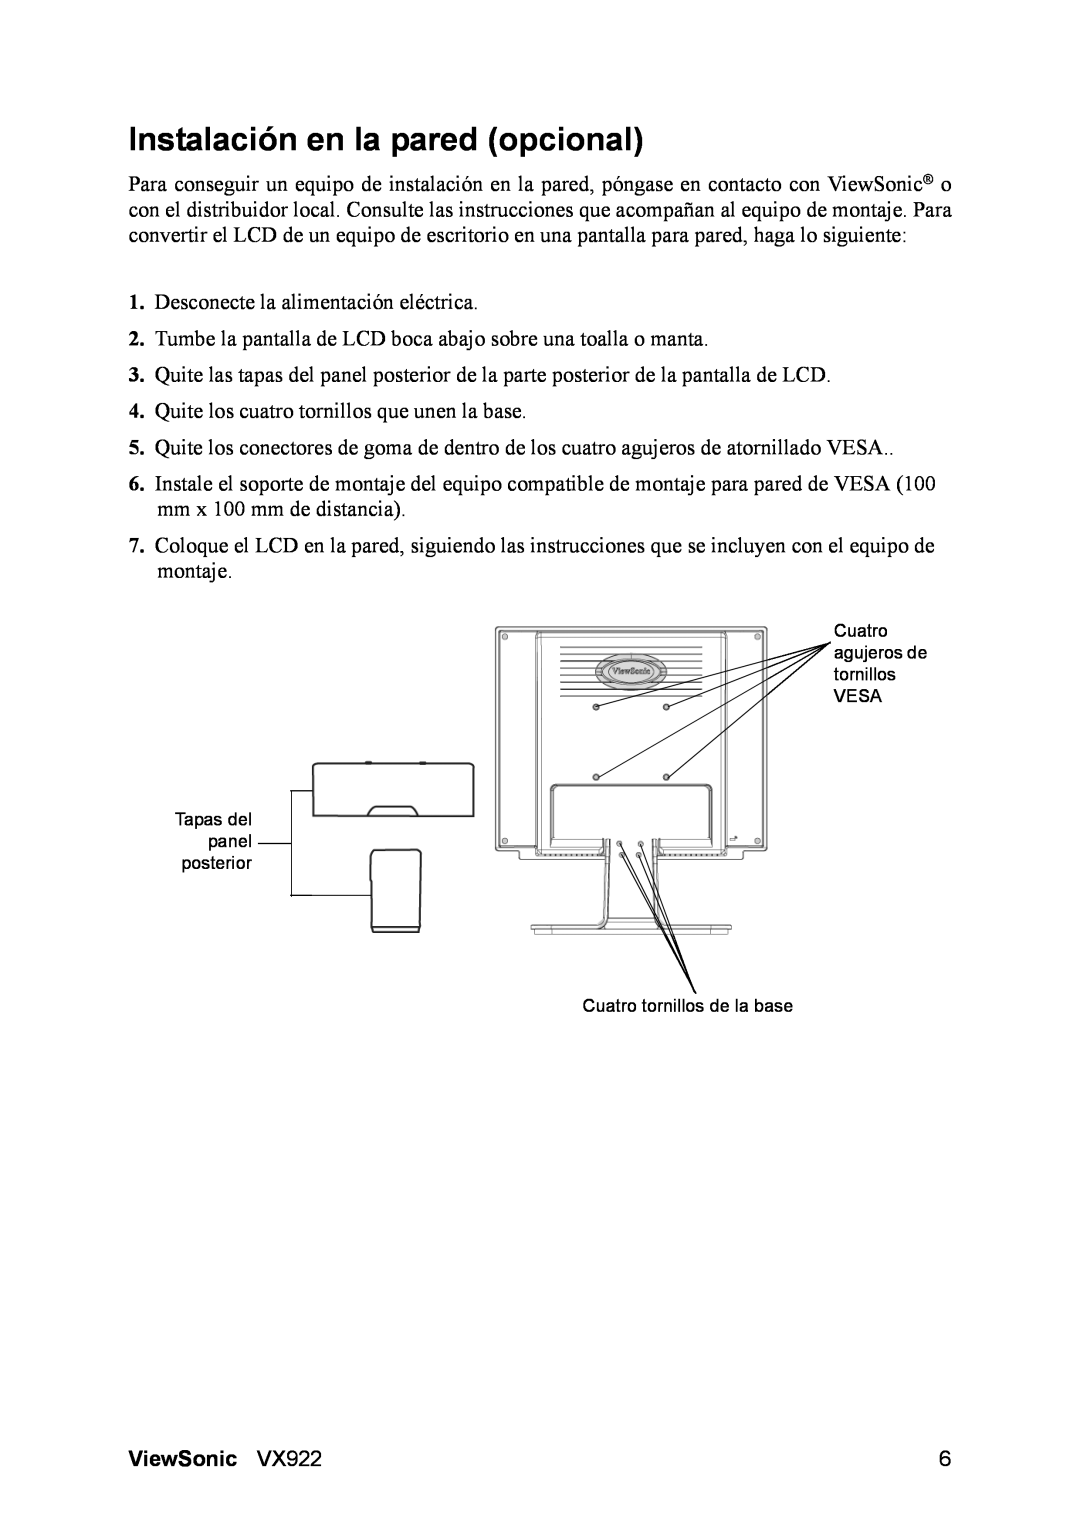 ViewSonic VX922 manual Instalación en la pared opcional, ViewSonic 